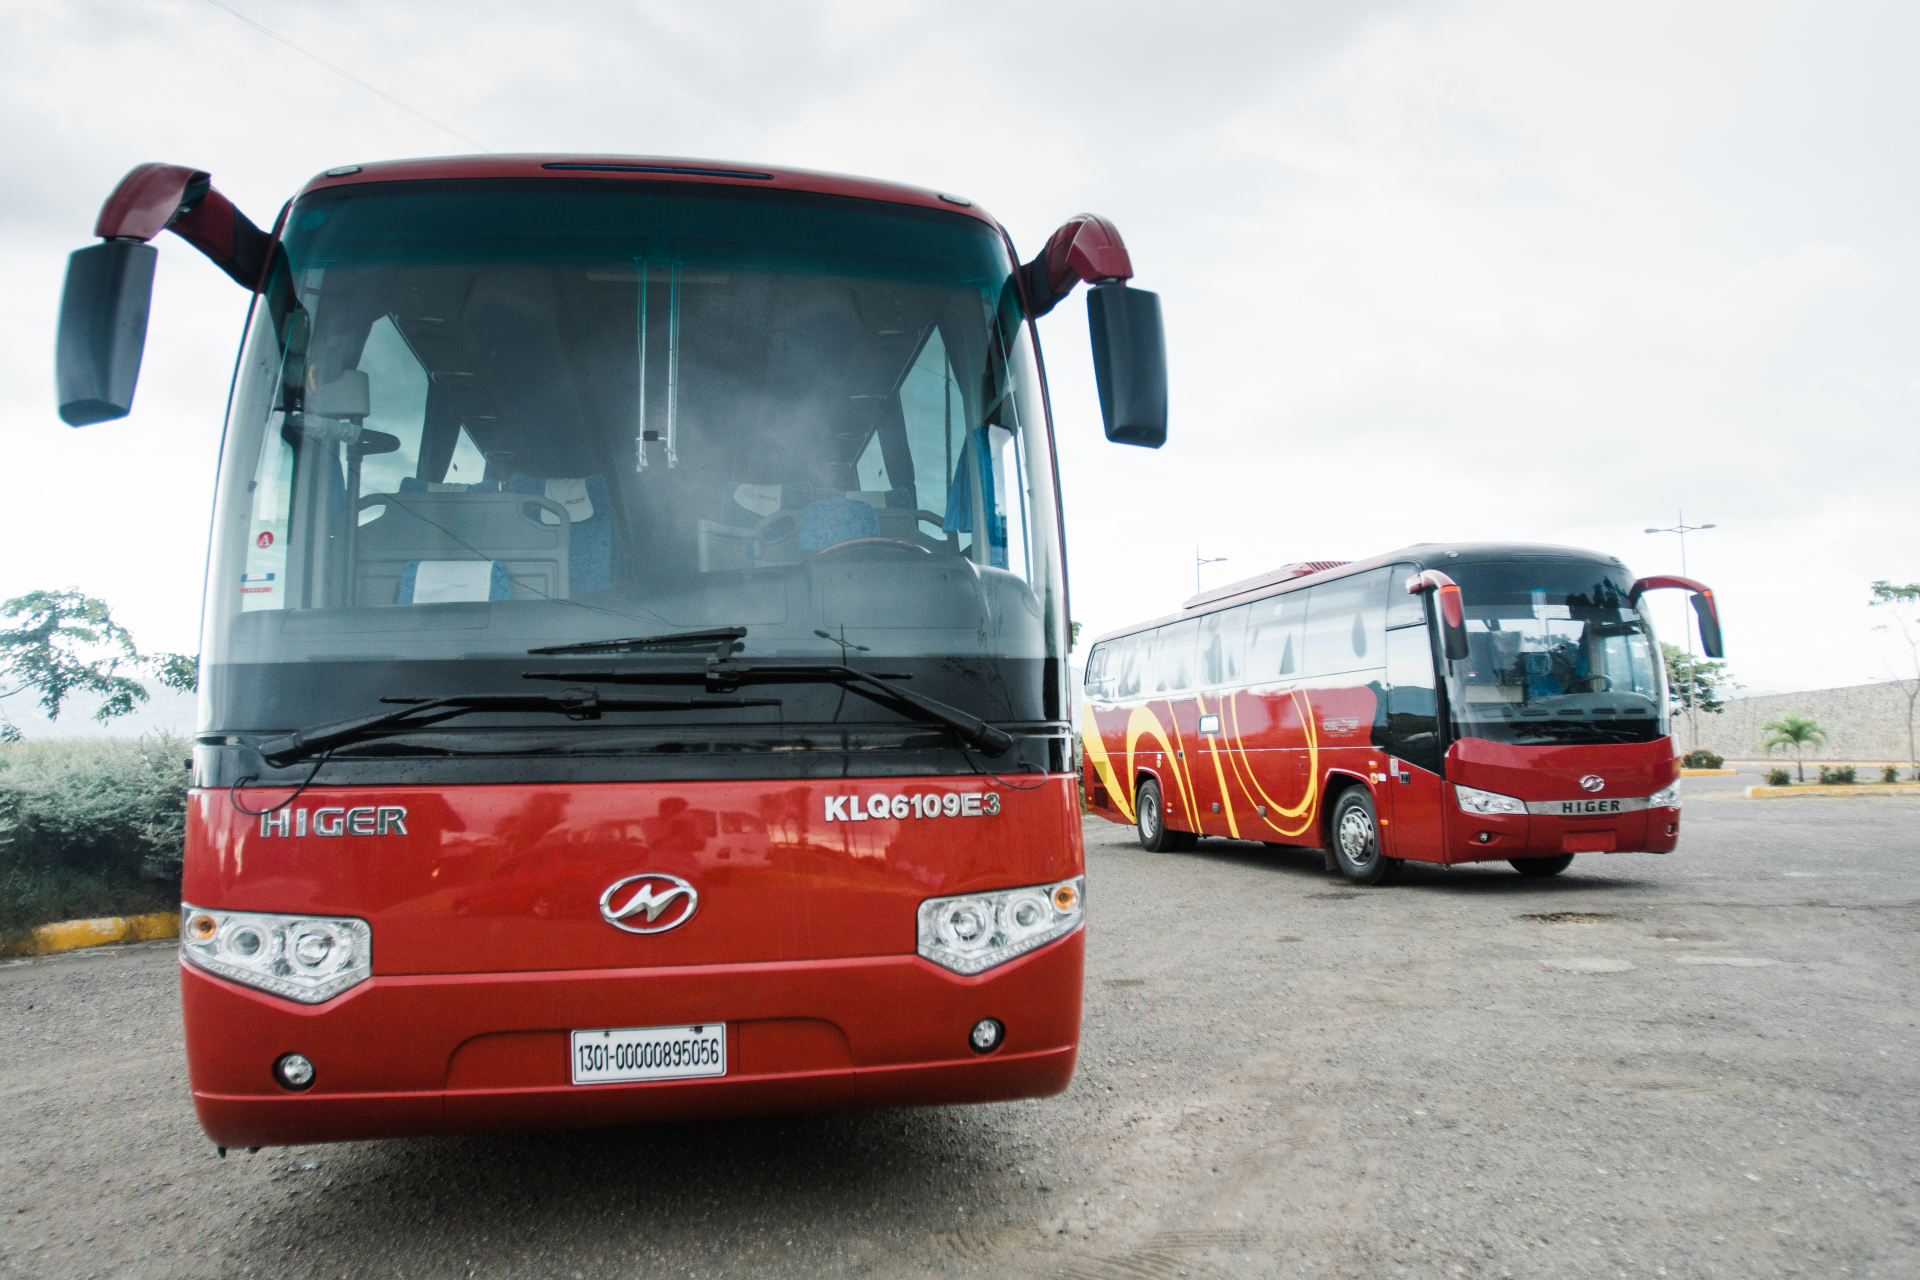 Higer Bus
Party Limo Bus /
Cebu City, Cebu

 / Hourly (City Tour) ₱5,500.00
 / Airport Transfer ₱3,500.00
 / Daily ₱10,500.00
